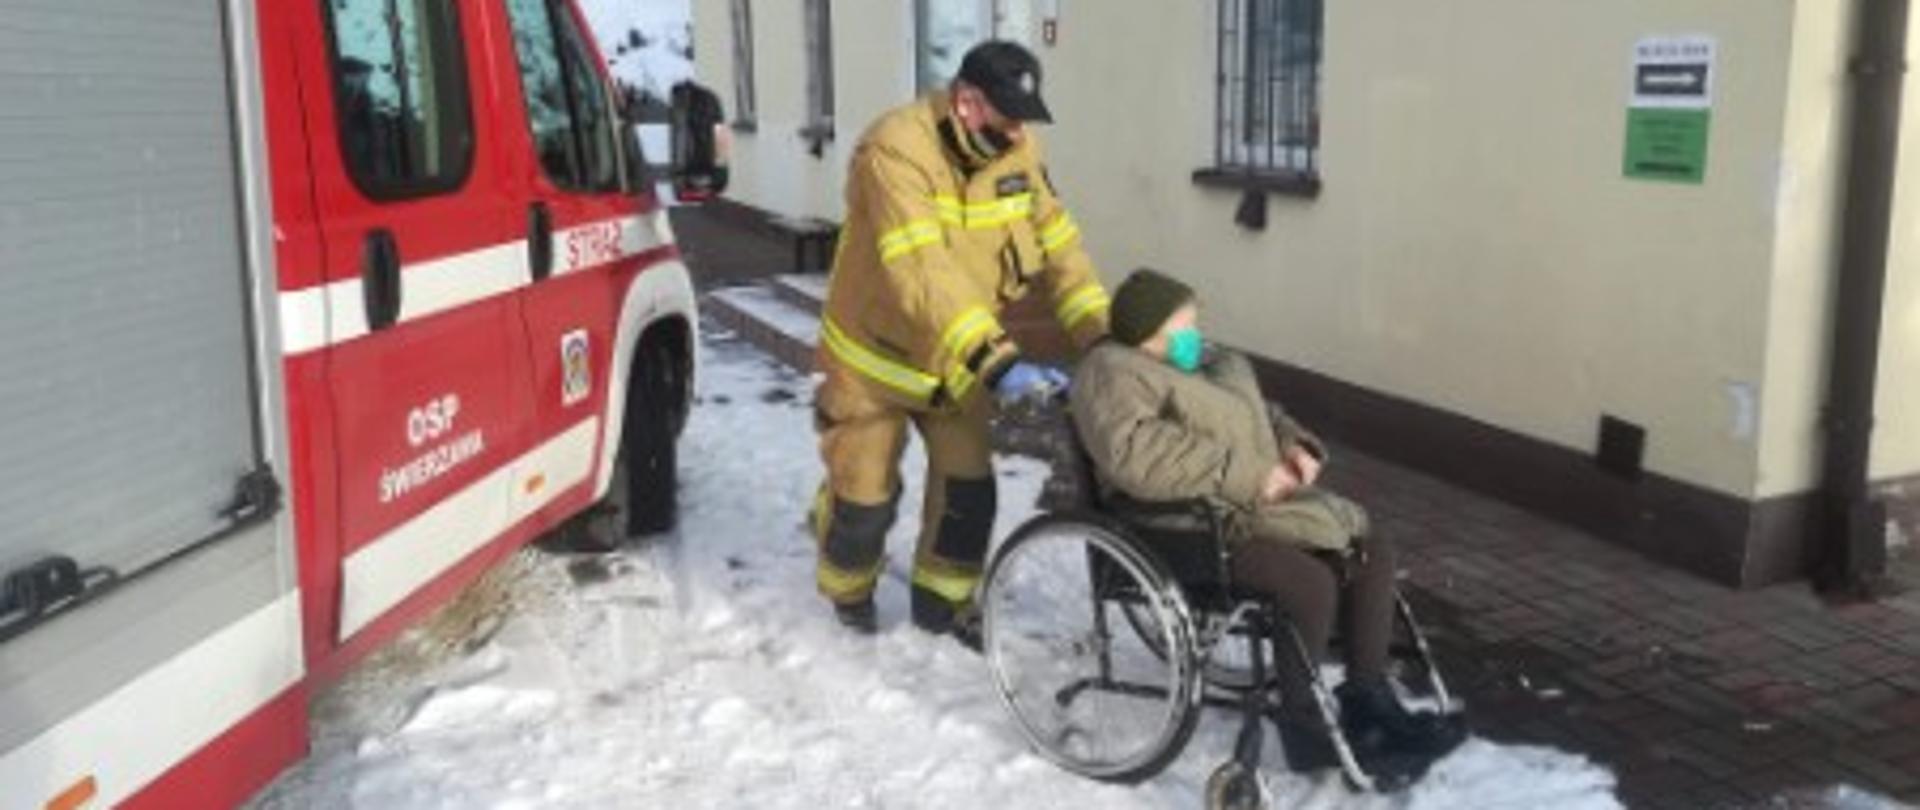 Na zdjęciu strażak pcha wózek z niepełnosprawną